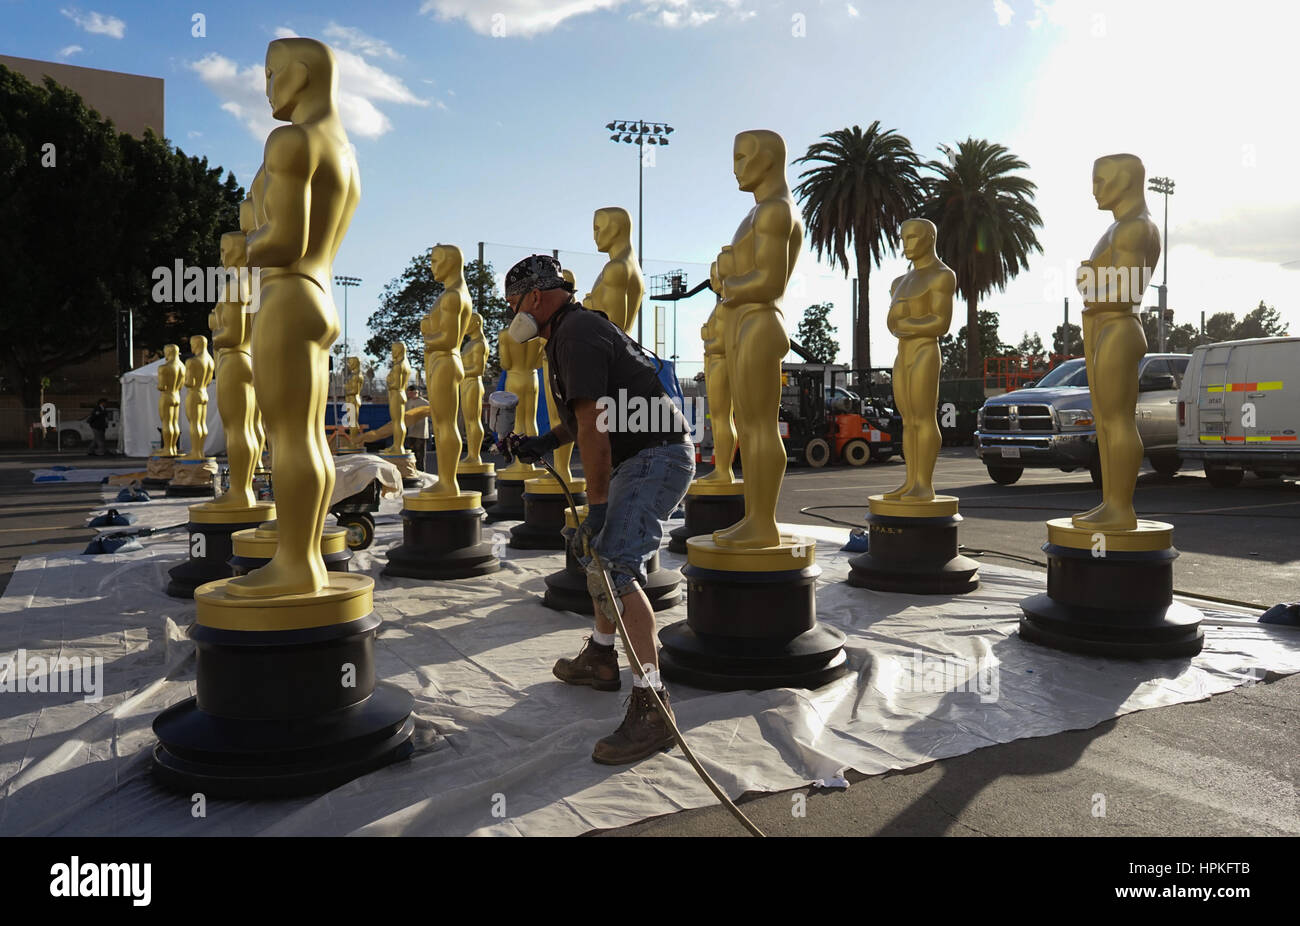 Los Angeles, Estados Unidos. 22 Feb, 2017. Las estatuas de los Oscar se observan durante los preparativos para la 89ª Premios de la Academia de Hollywood, Los Angeles, Estados Unidos, 22 de febrero de 2017. Los 89º Premios de la Academia, o 'Oscars', se celebrará el 26 de febrero. Crédito: Yang Lei/Xinhua/Alamy Live News Foto de stock